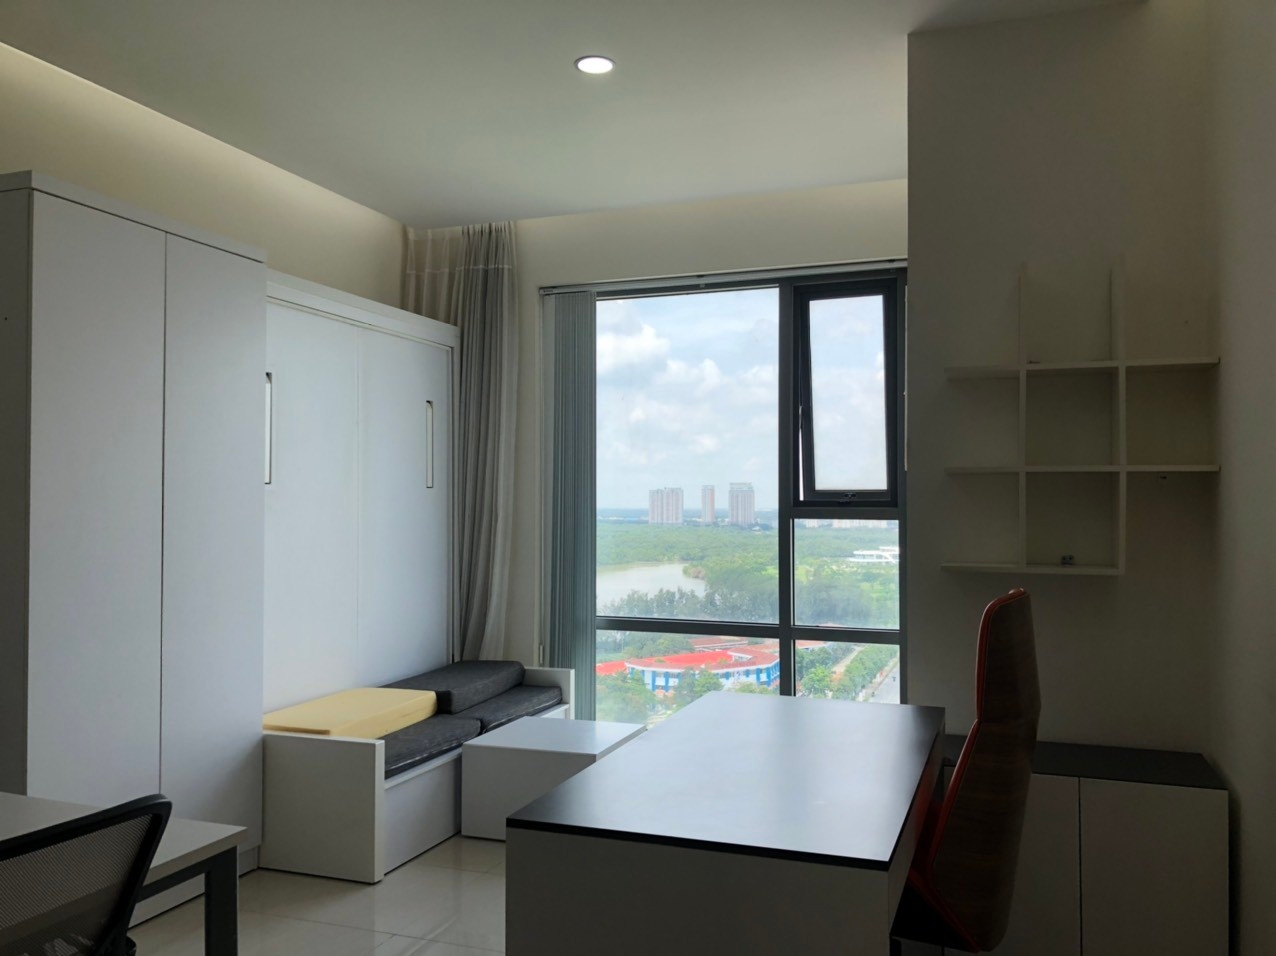 Cho thuê văn phòng có nội thất,giá rẻ tại chung cư Golden King-Phú Mỹ Hưng- quận 7.Lh: 0965.439.257-Thanh